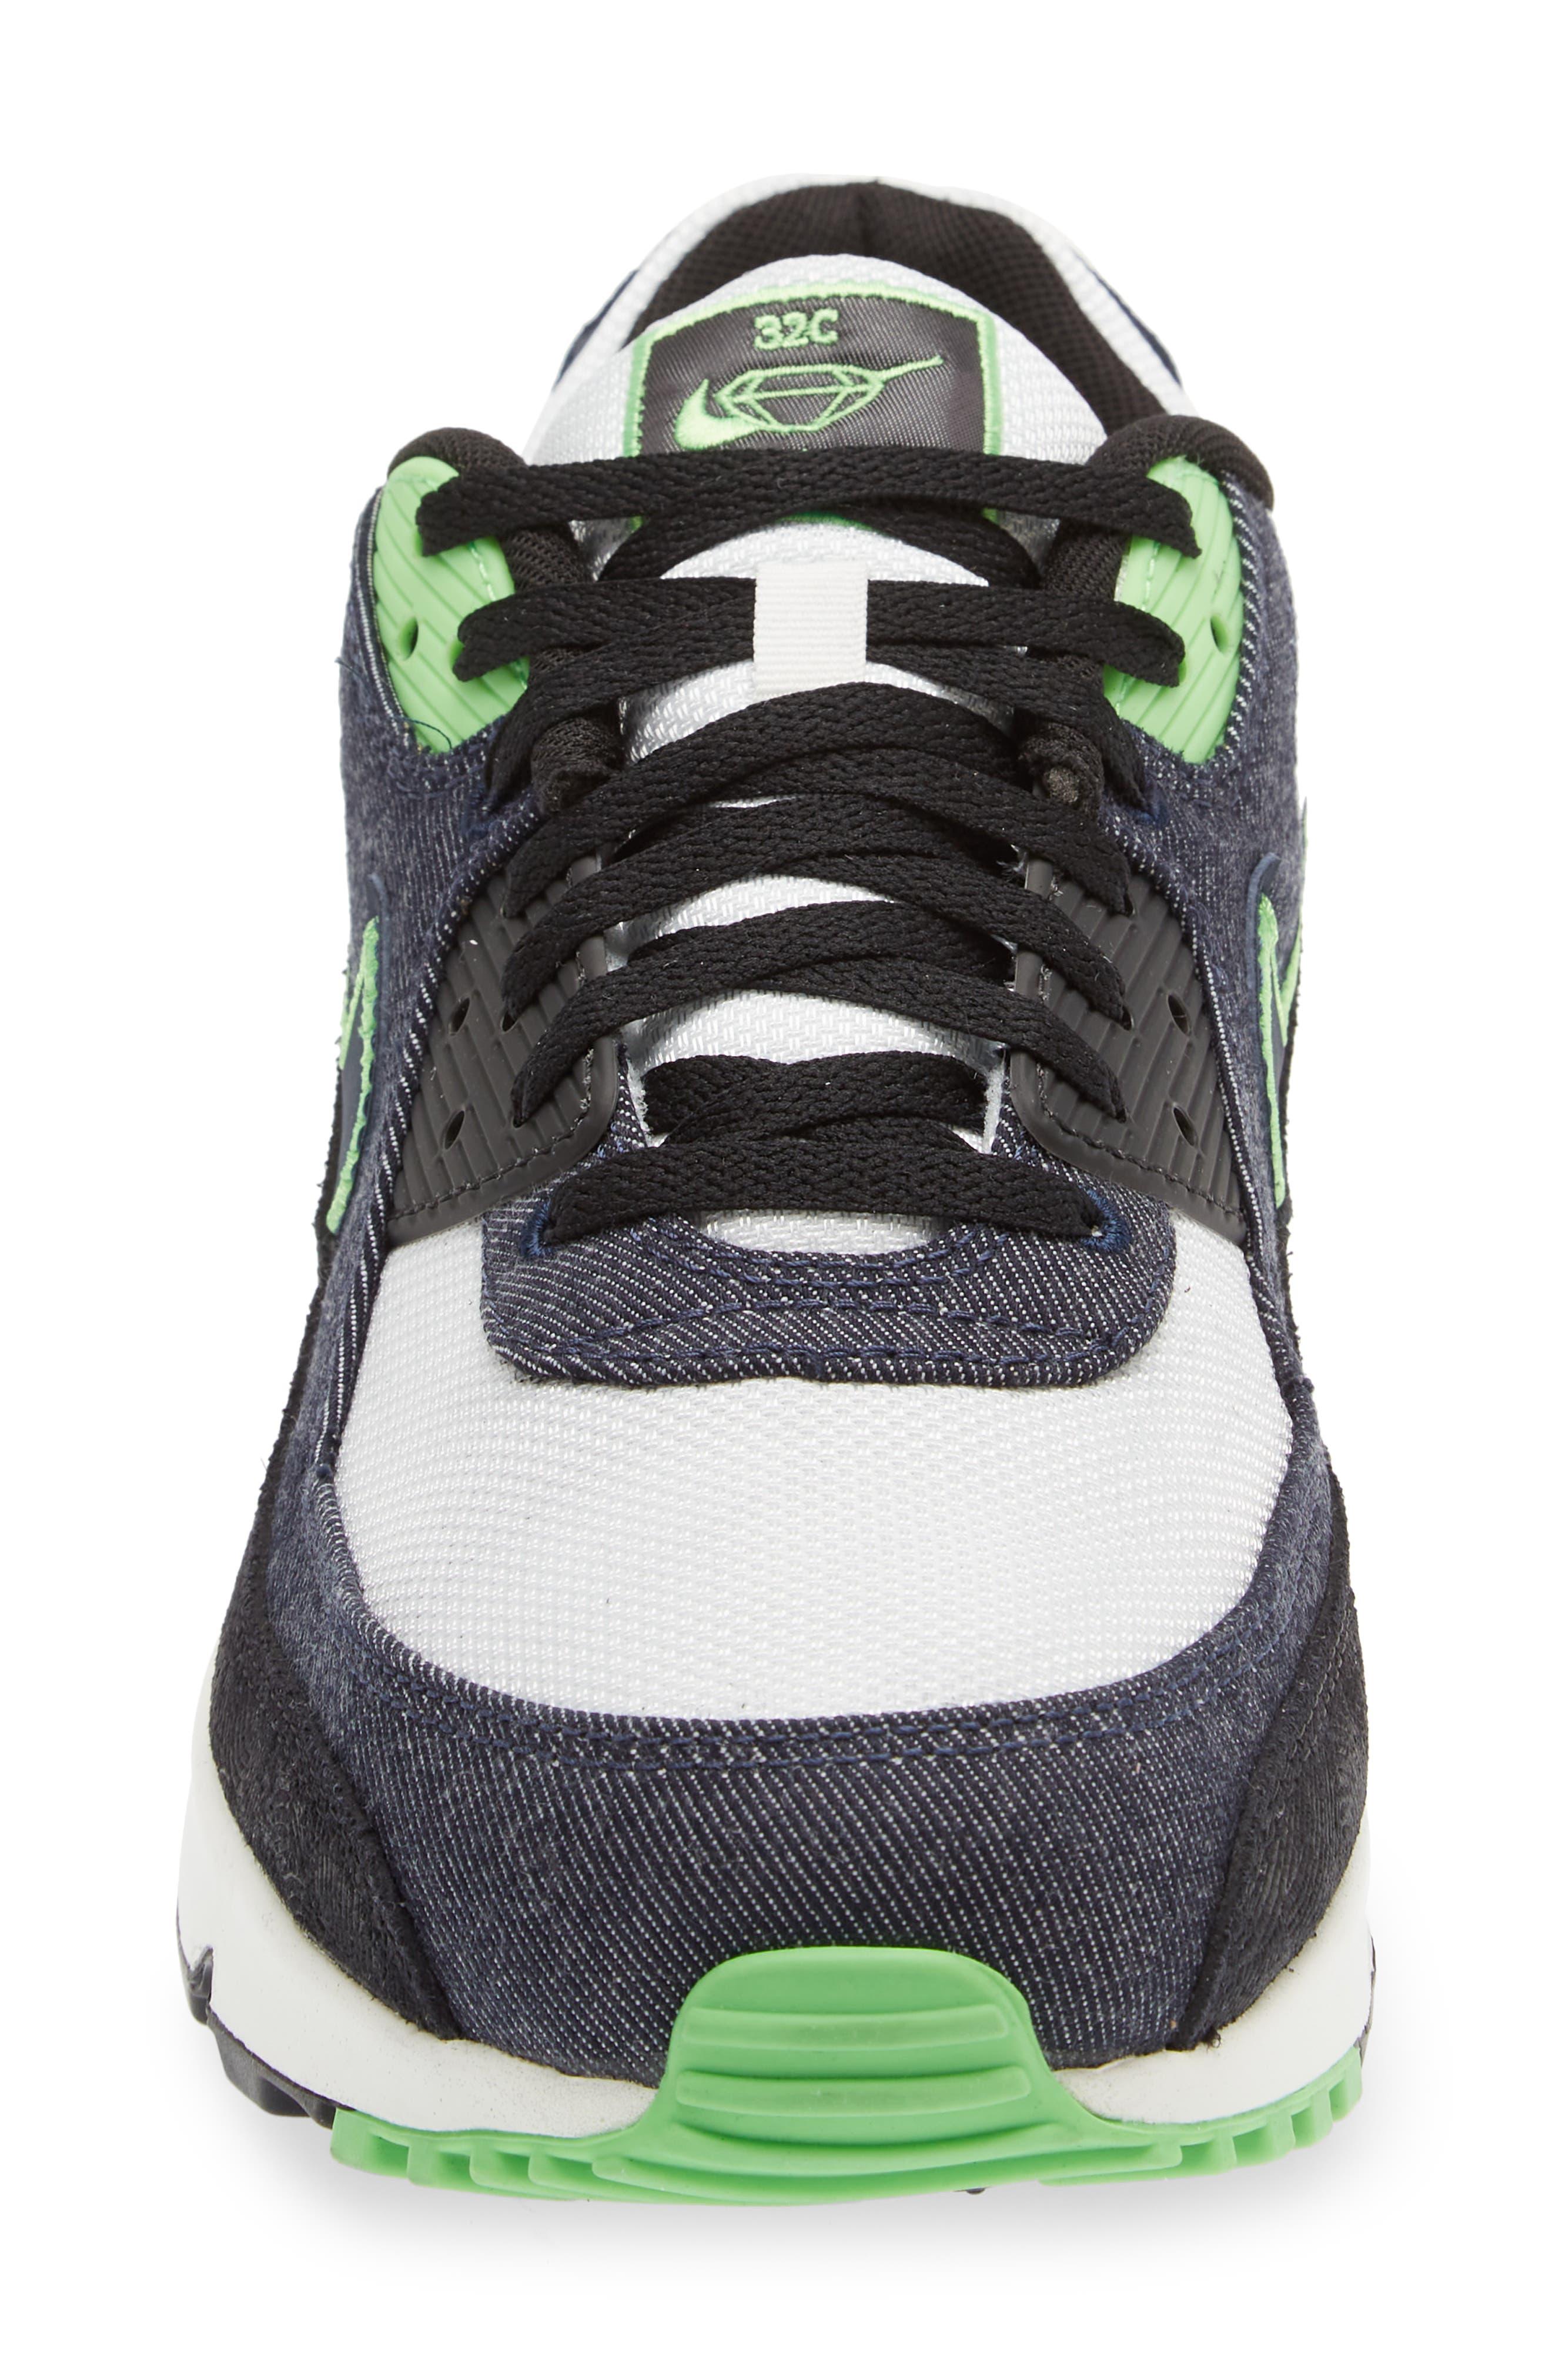 Nike Air Max 90 Se Sneaker In Black/obsidian/green/white At Nordstrom Rack Gray for Men Lyst